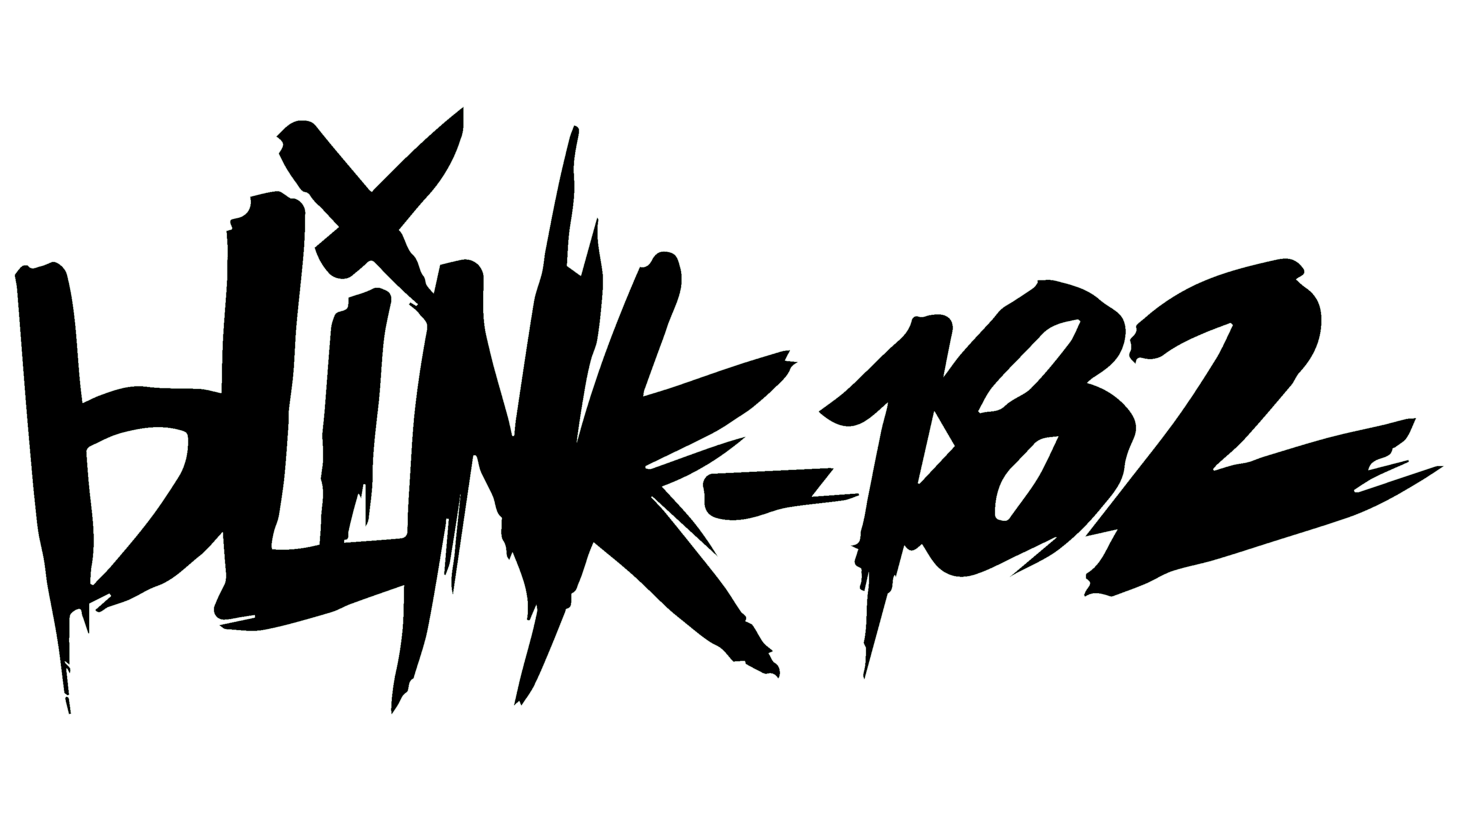 Blink 182 logo